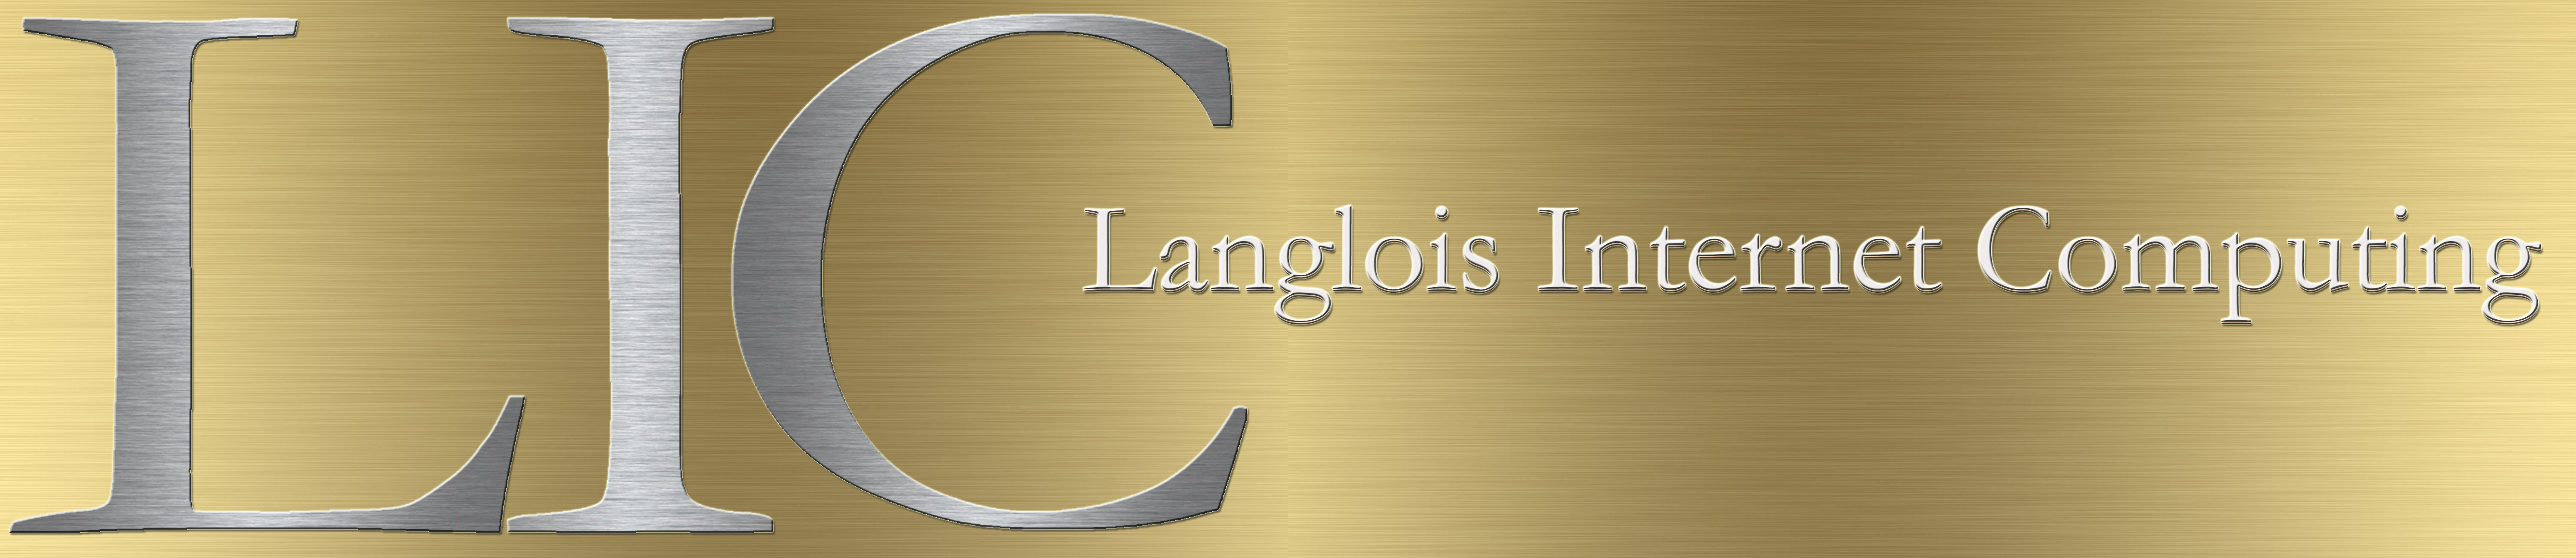 Langlois Internet :: Billing, Support